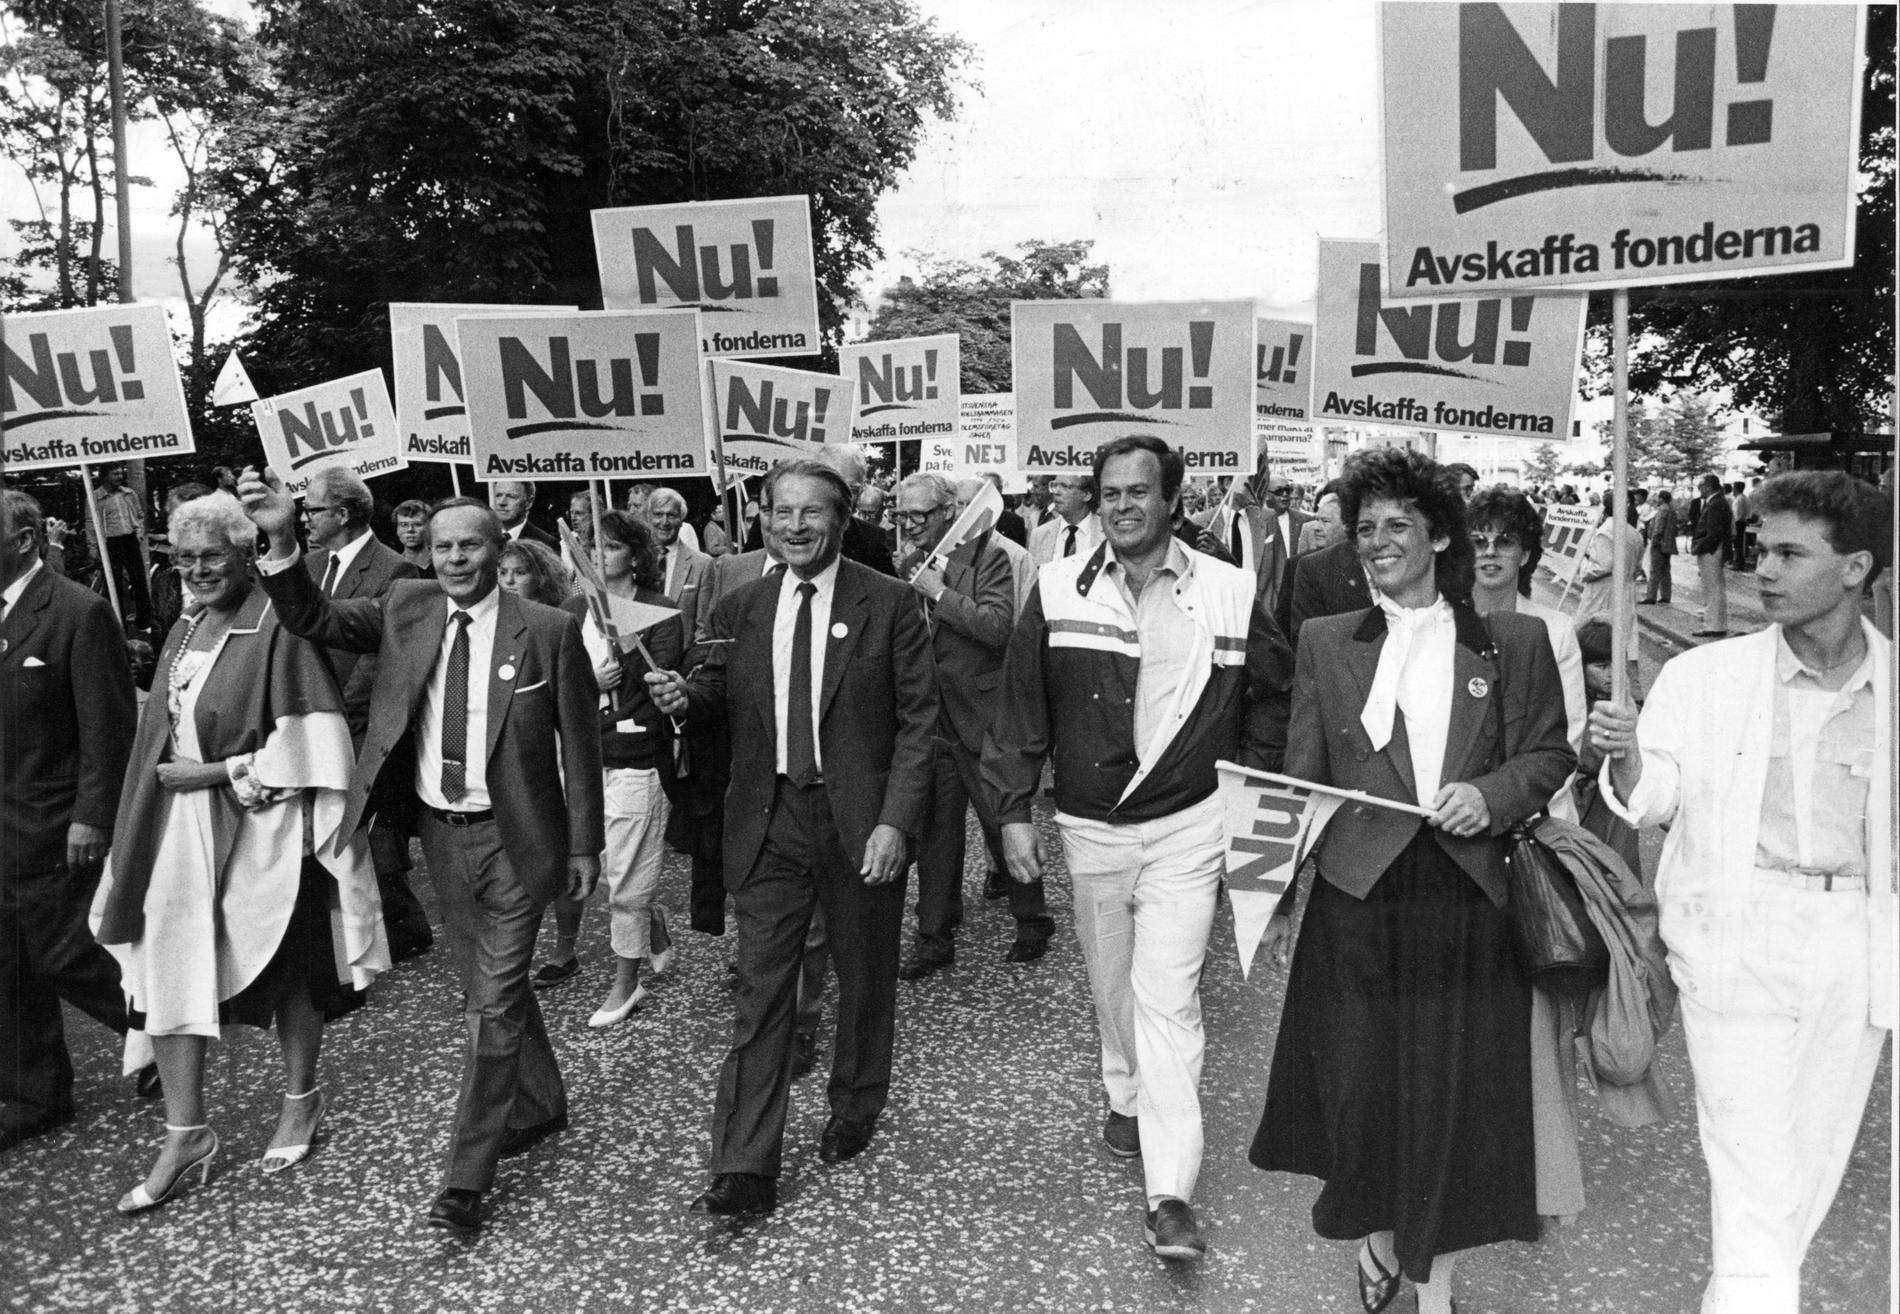 Saf-ordförande Curt Nicolin och direktören Antonia A:xson Johnson i spetsen för näringslivets protest mot löntagarfonderna 1985. Nu väntas en liknande mobilisering när friskolornas vinstnivåer ifrågasätts.